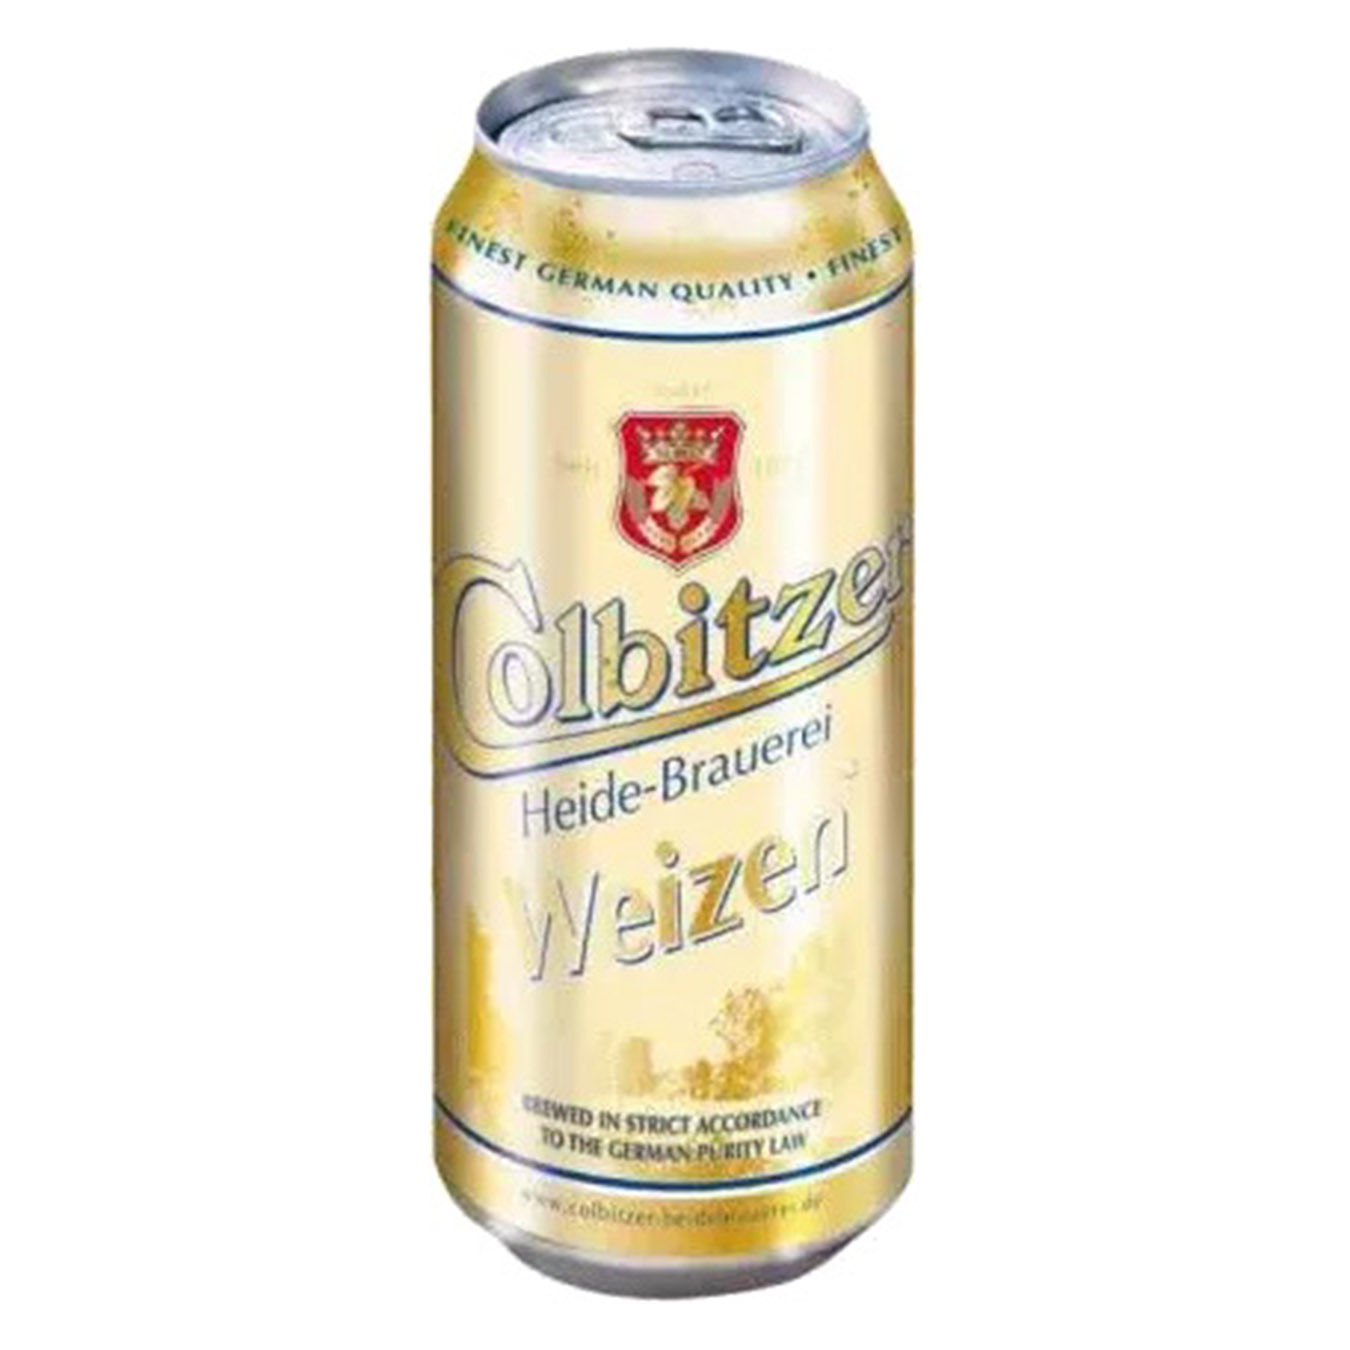 Пиво Colbitzer светлое нефильтрованное пшеничное 5,3% 0,5л.